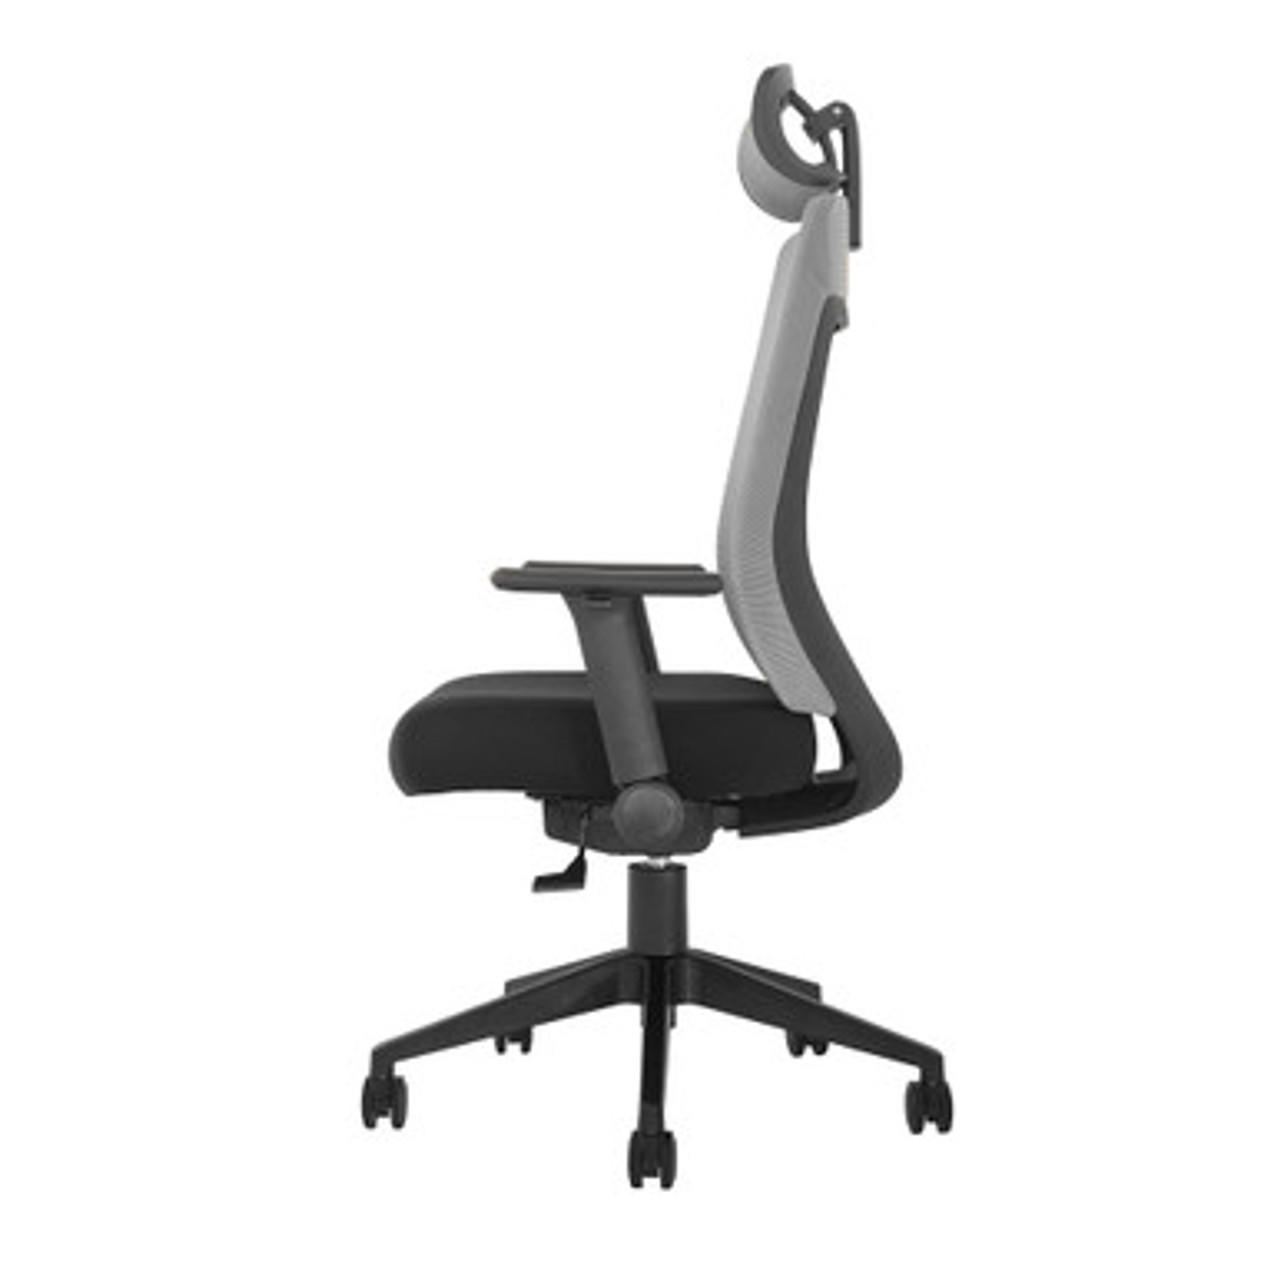  Office Source Vyka Flip Arm High Back Mesh Task Chair with Headrest 1101HMF 